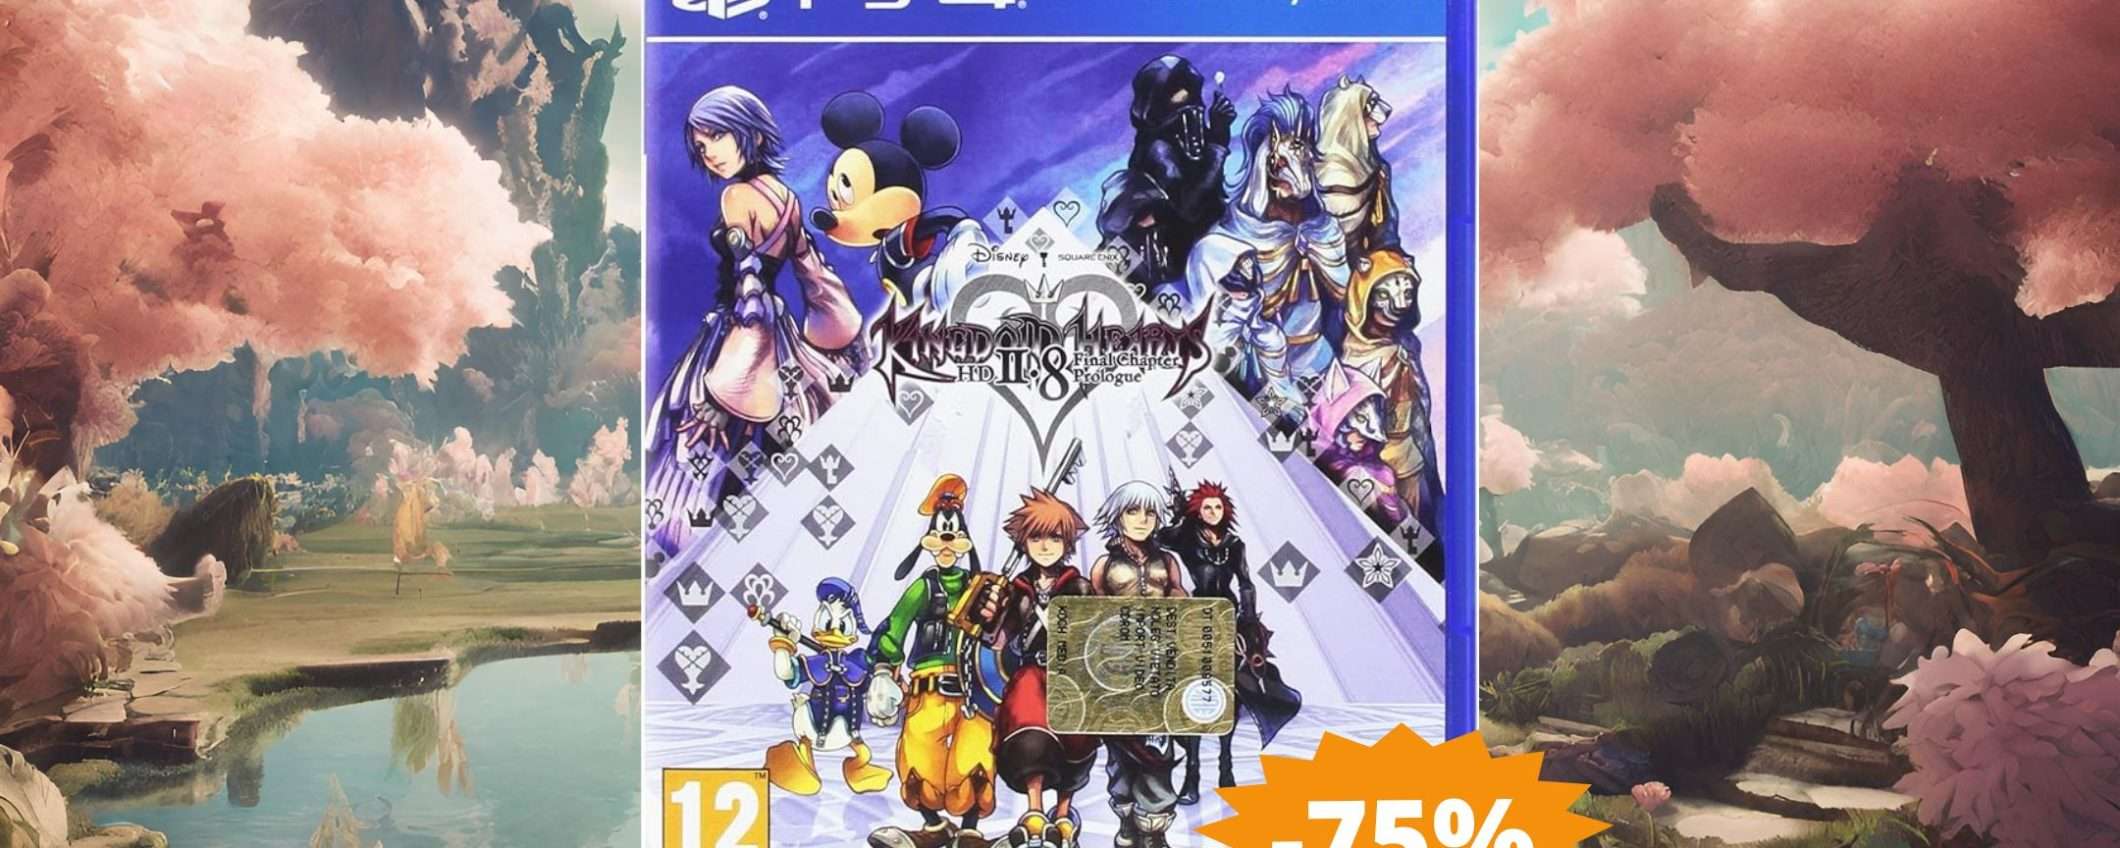 Kingdom Hearts HD 2.8 per PS4: sconto FOLLE del 75%